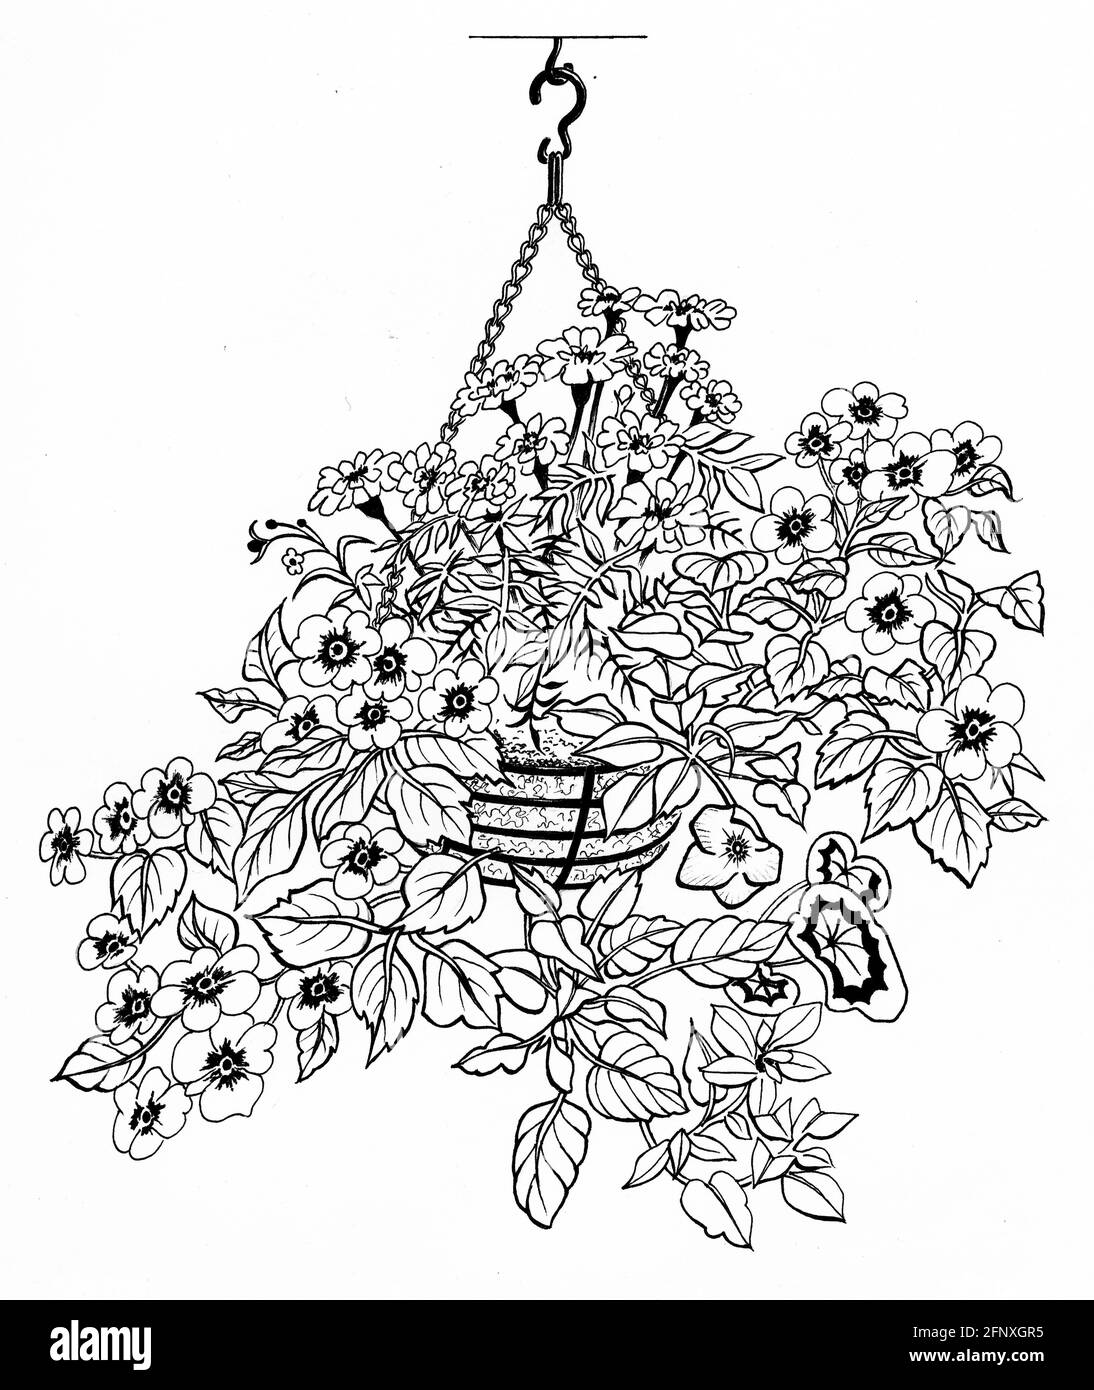 Dessin d'un panier suspendu complet avec un sphagnum mousse et plantes matures qui ont été top et côté planté Banque D'Images